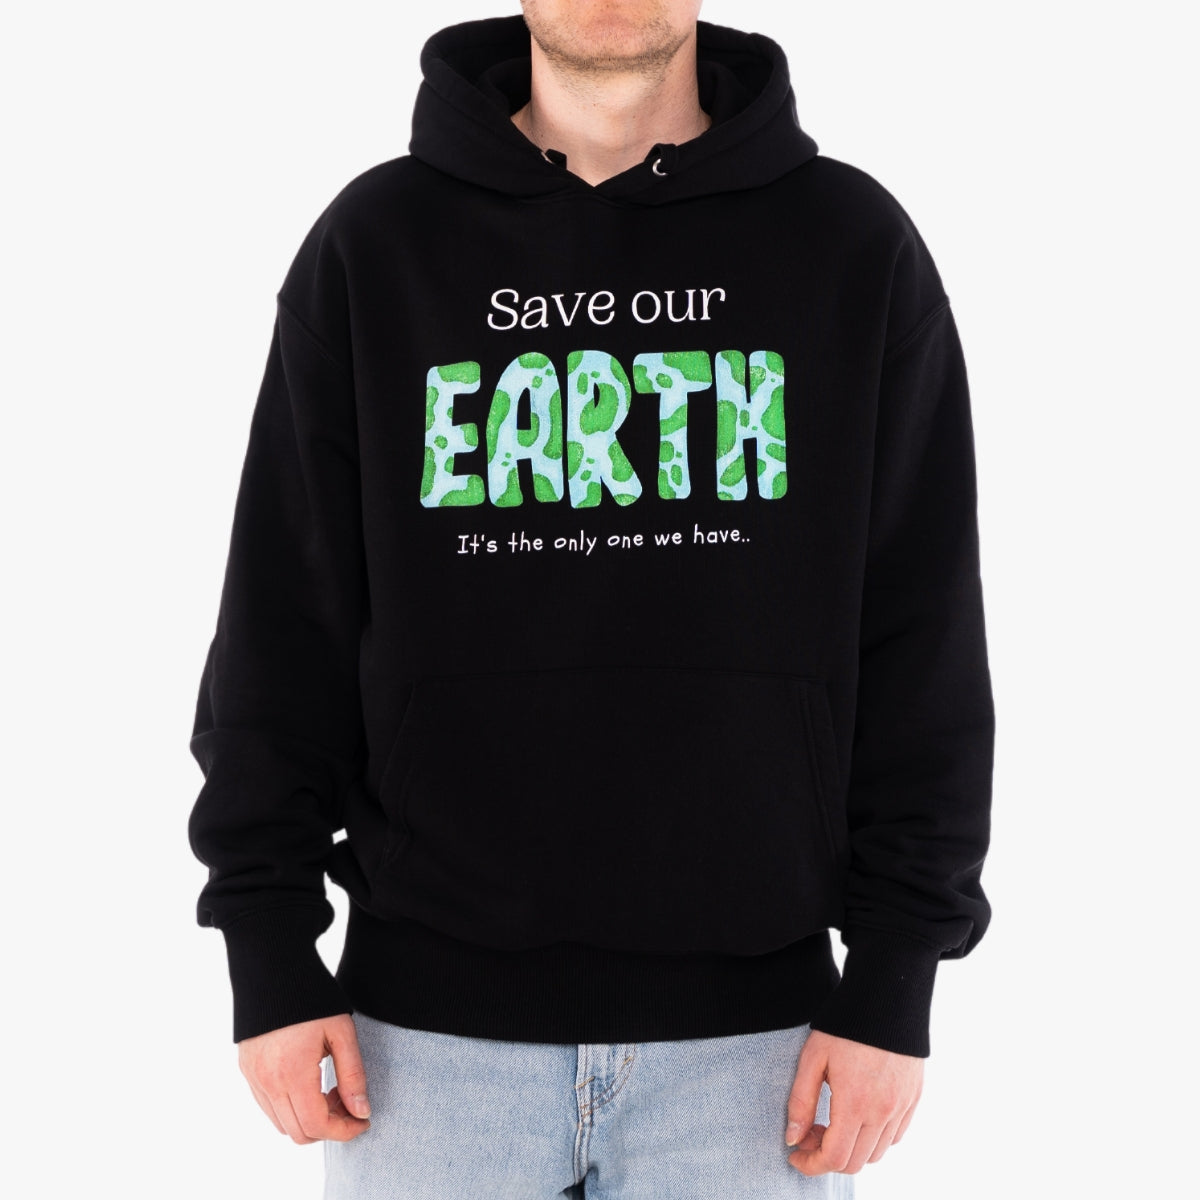 'SAVE OUR EARTH' Organic Relaxed Hoodie in der Farbe Black als Detail Nahaufnahme getragen von einem männlichen Model